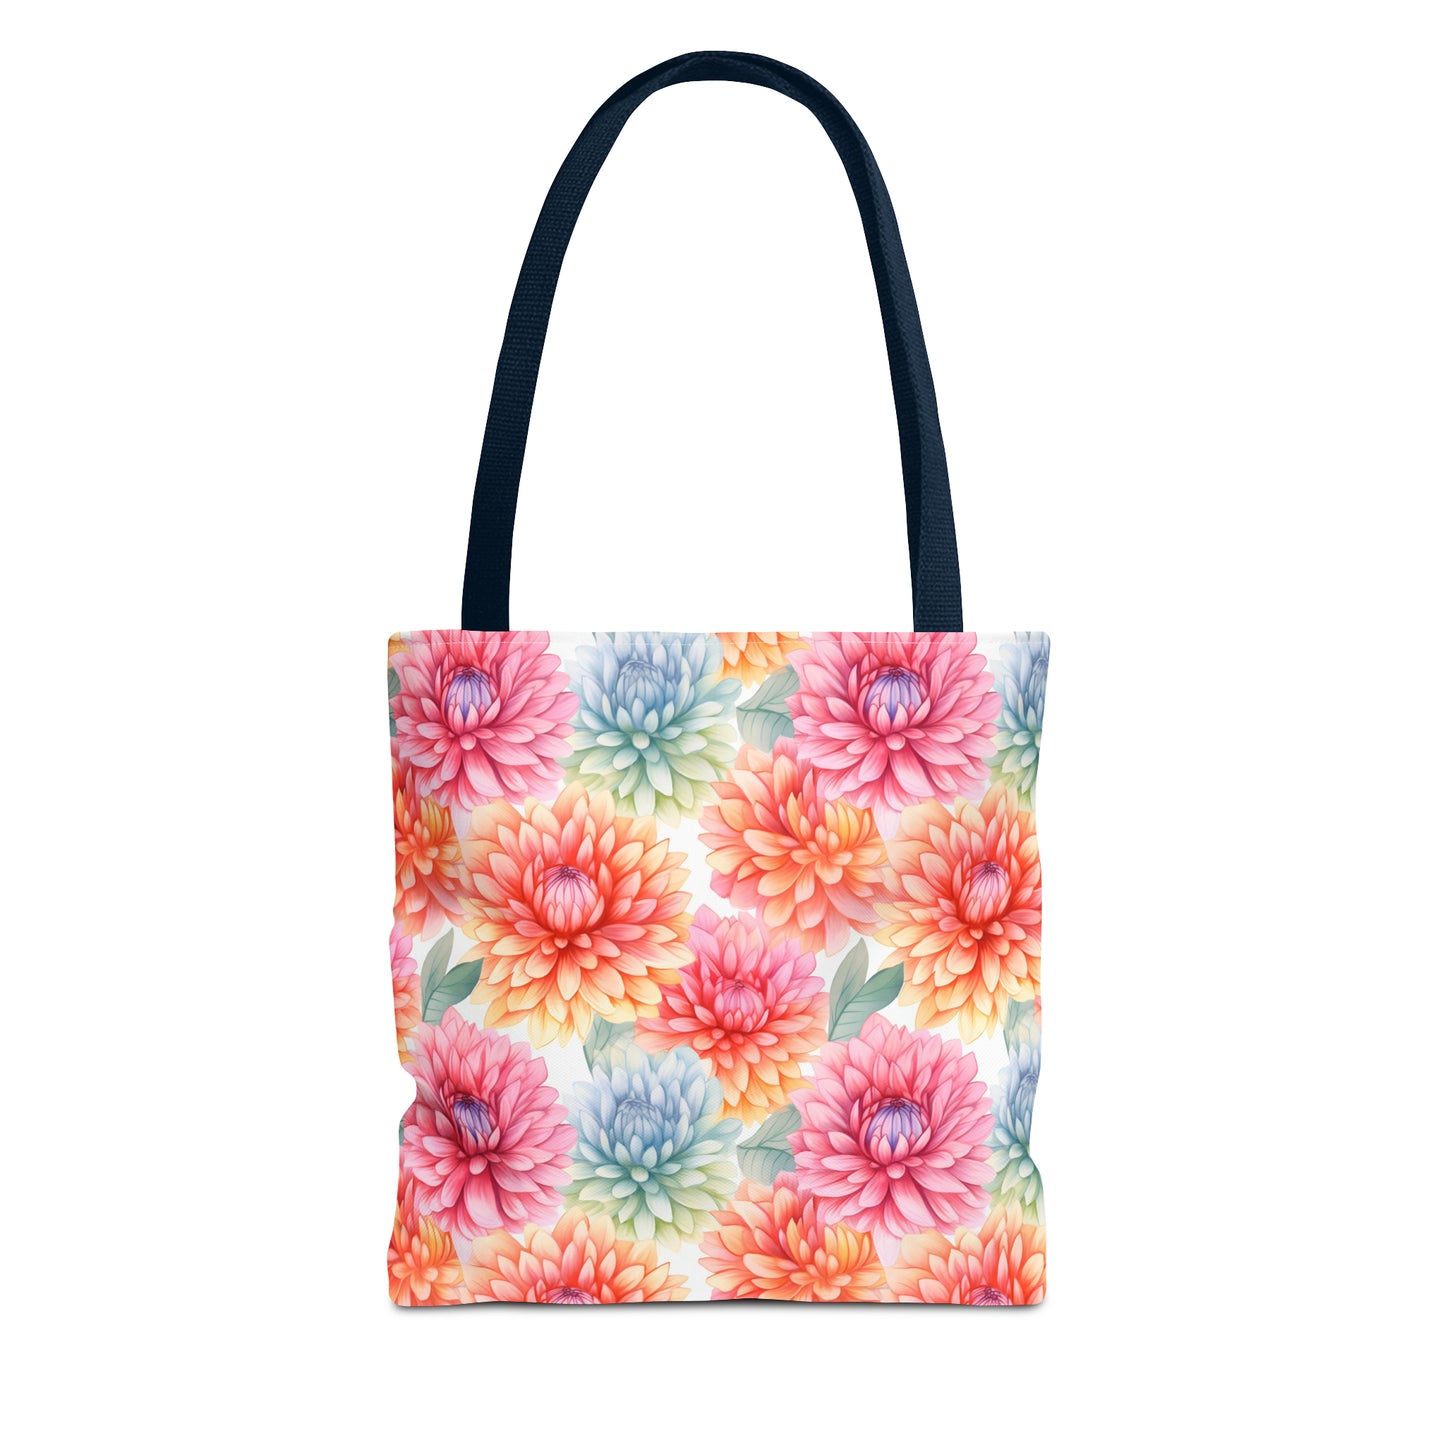 Pastel Blooms Chrysanthemum Tote Bag (13" x 13")